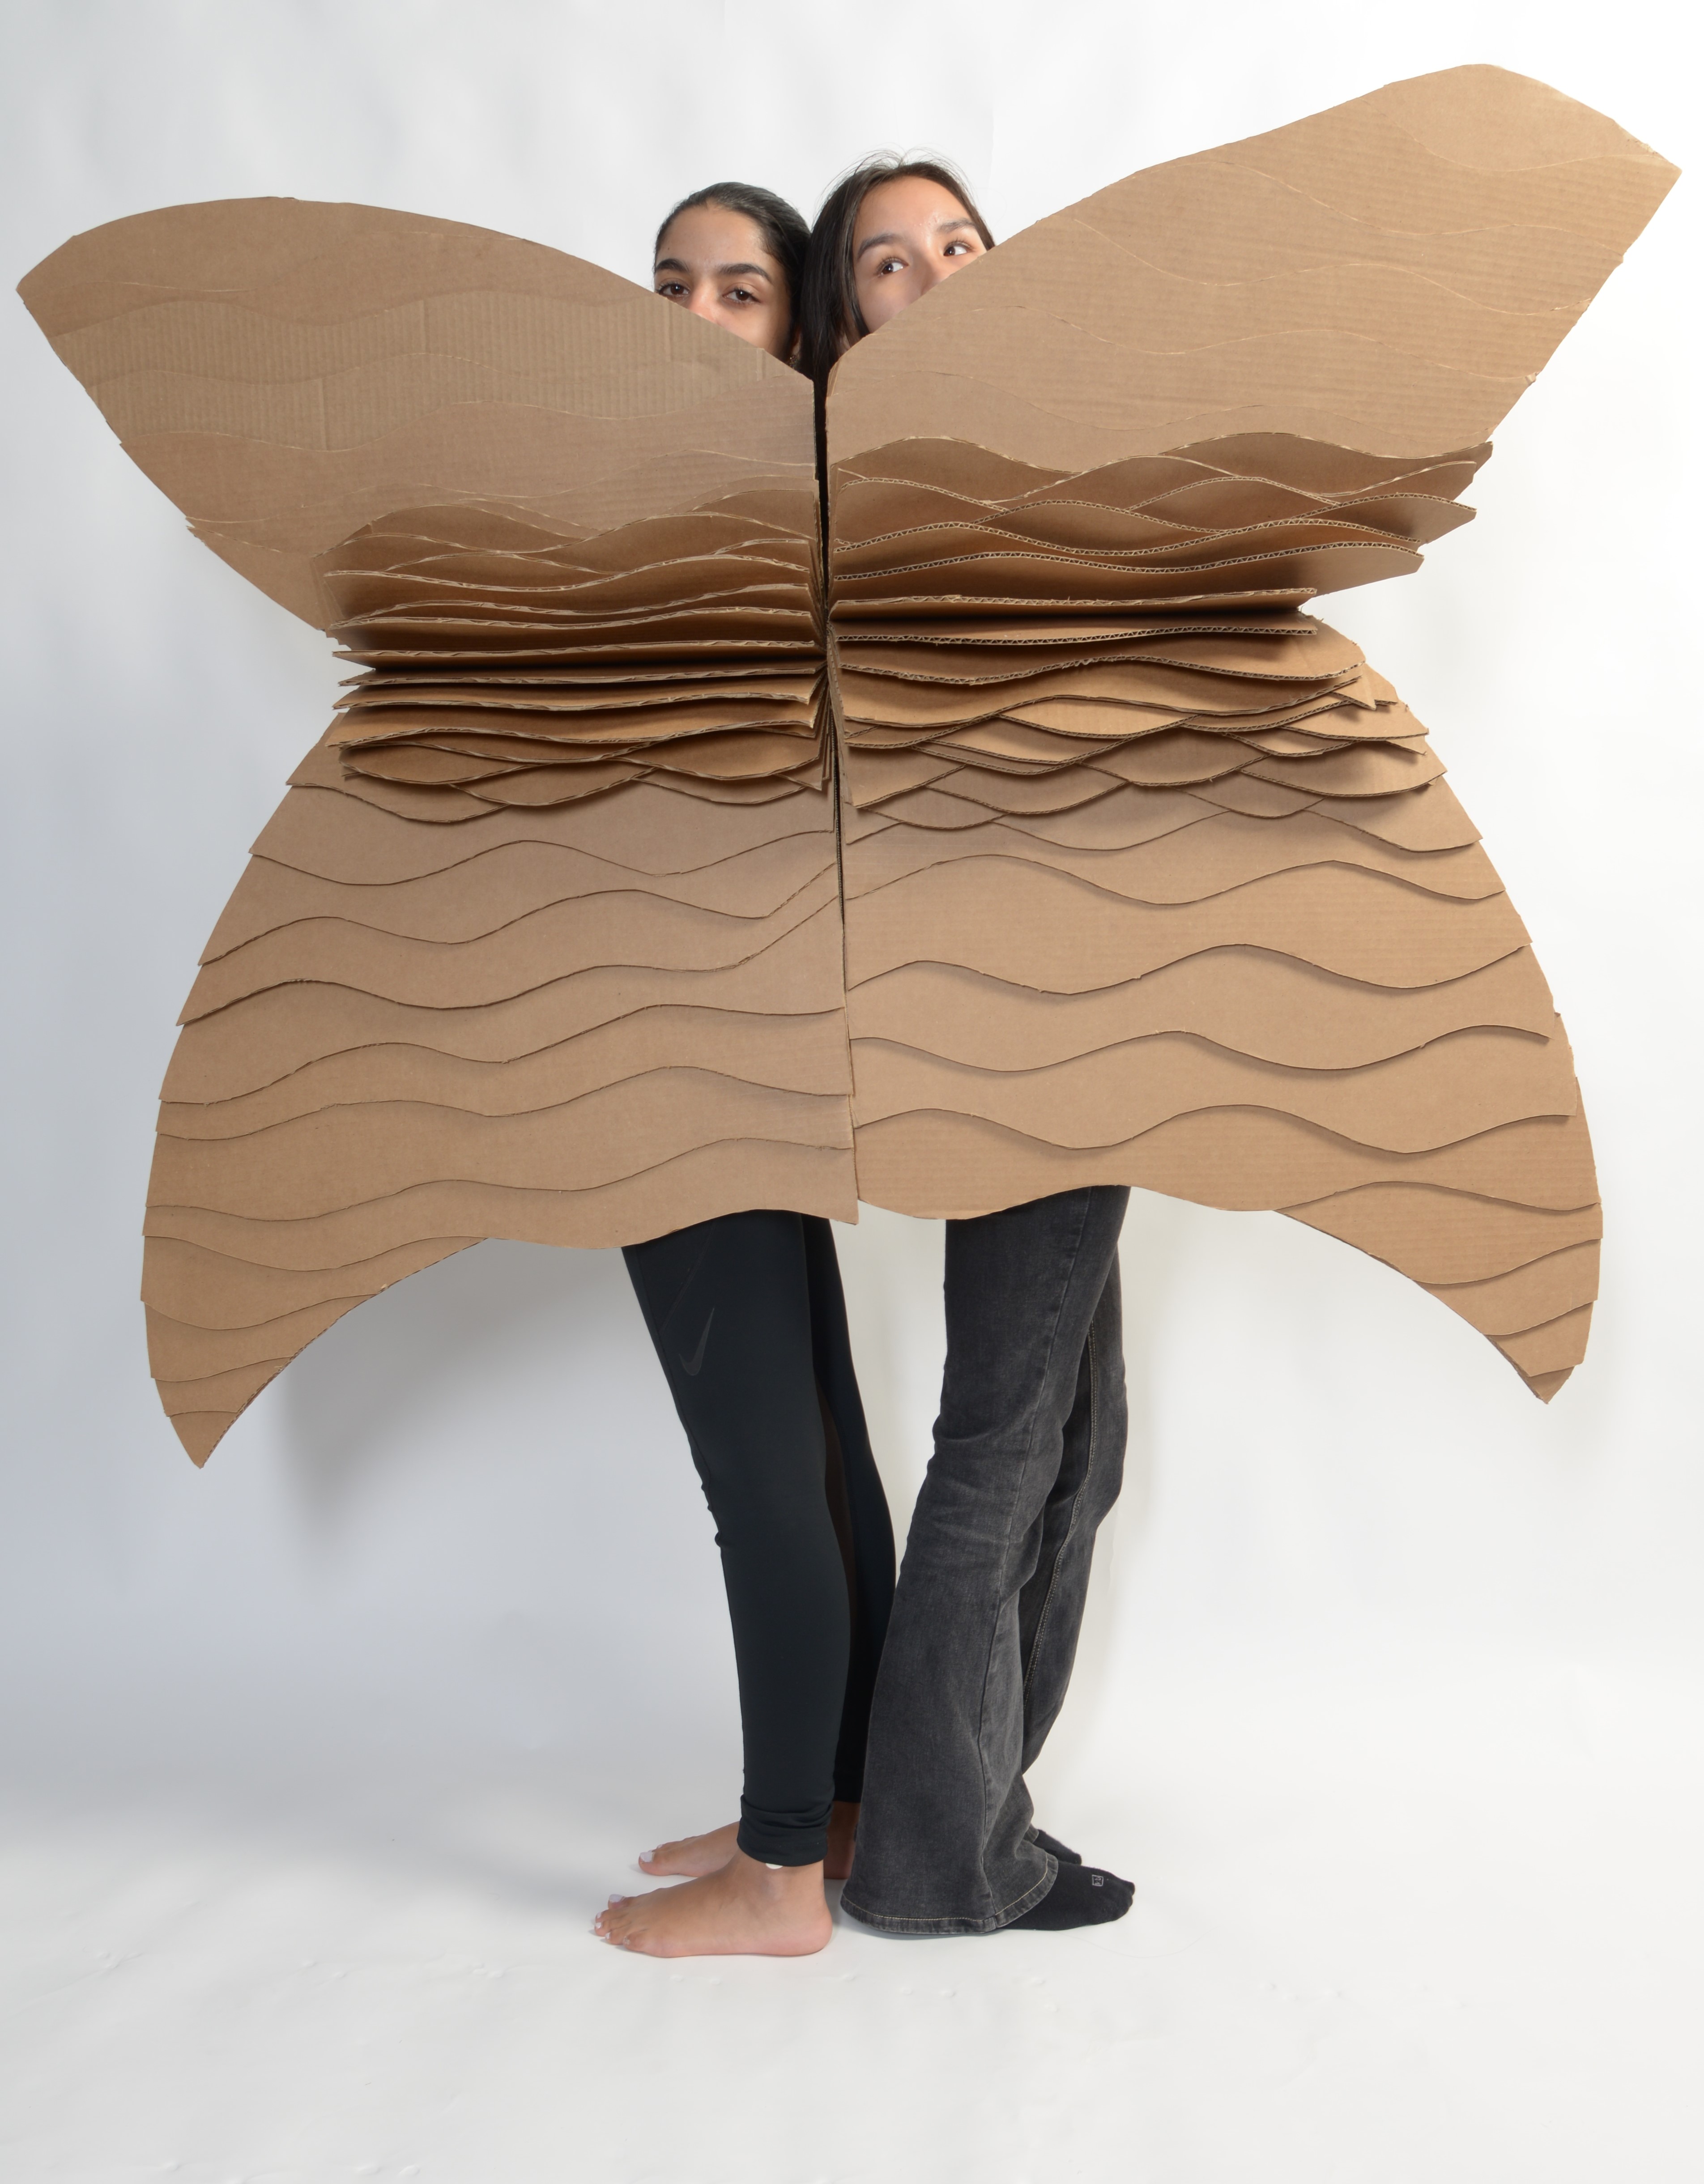 two figures wear cardboard cutouts that combine to look like wings